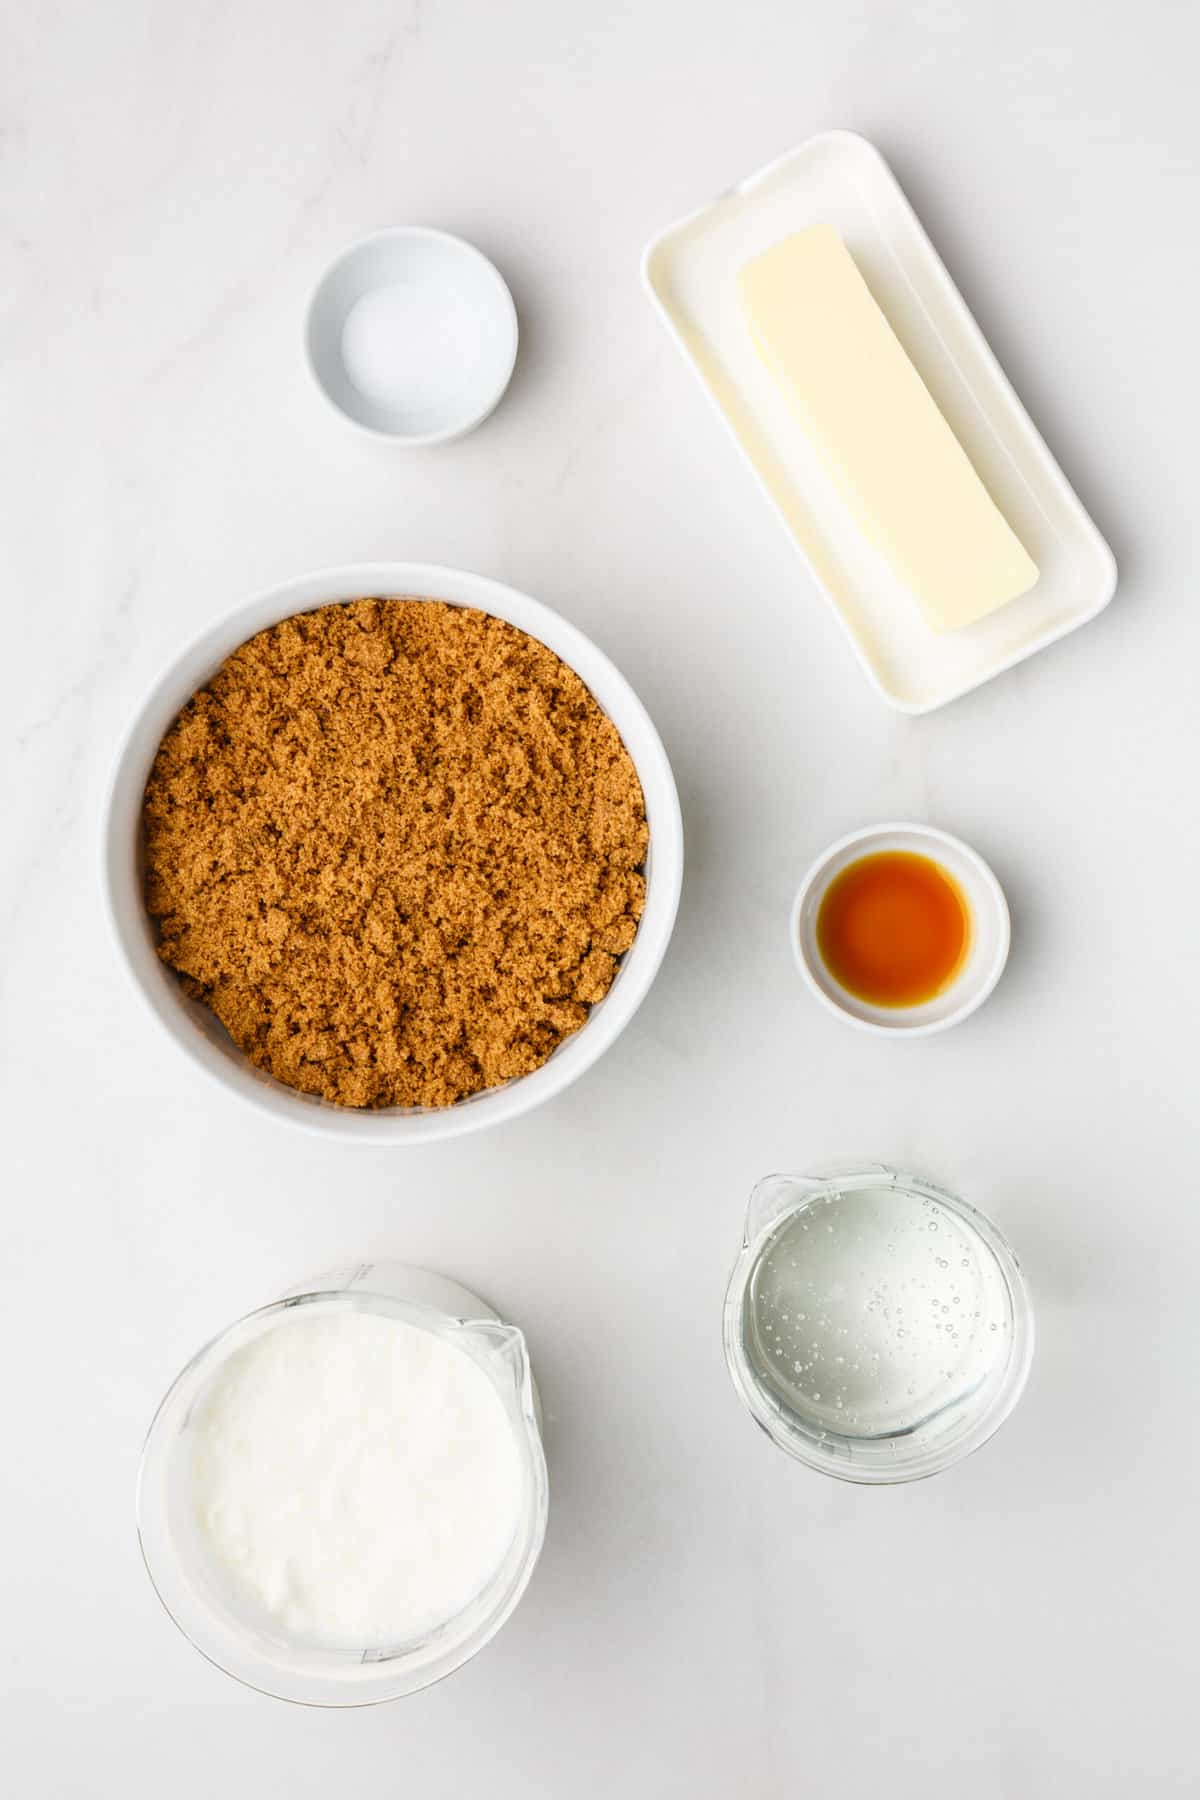 ingredients to make homemade caramel sauce